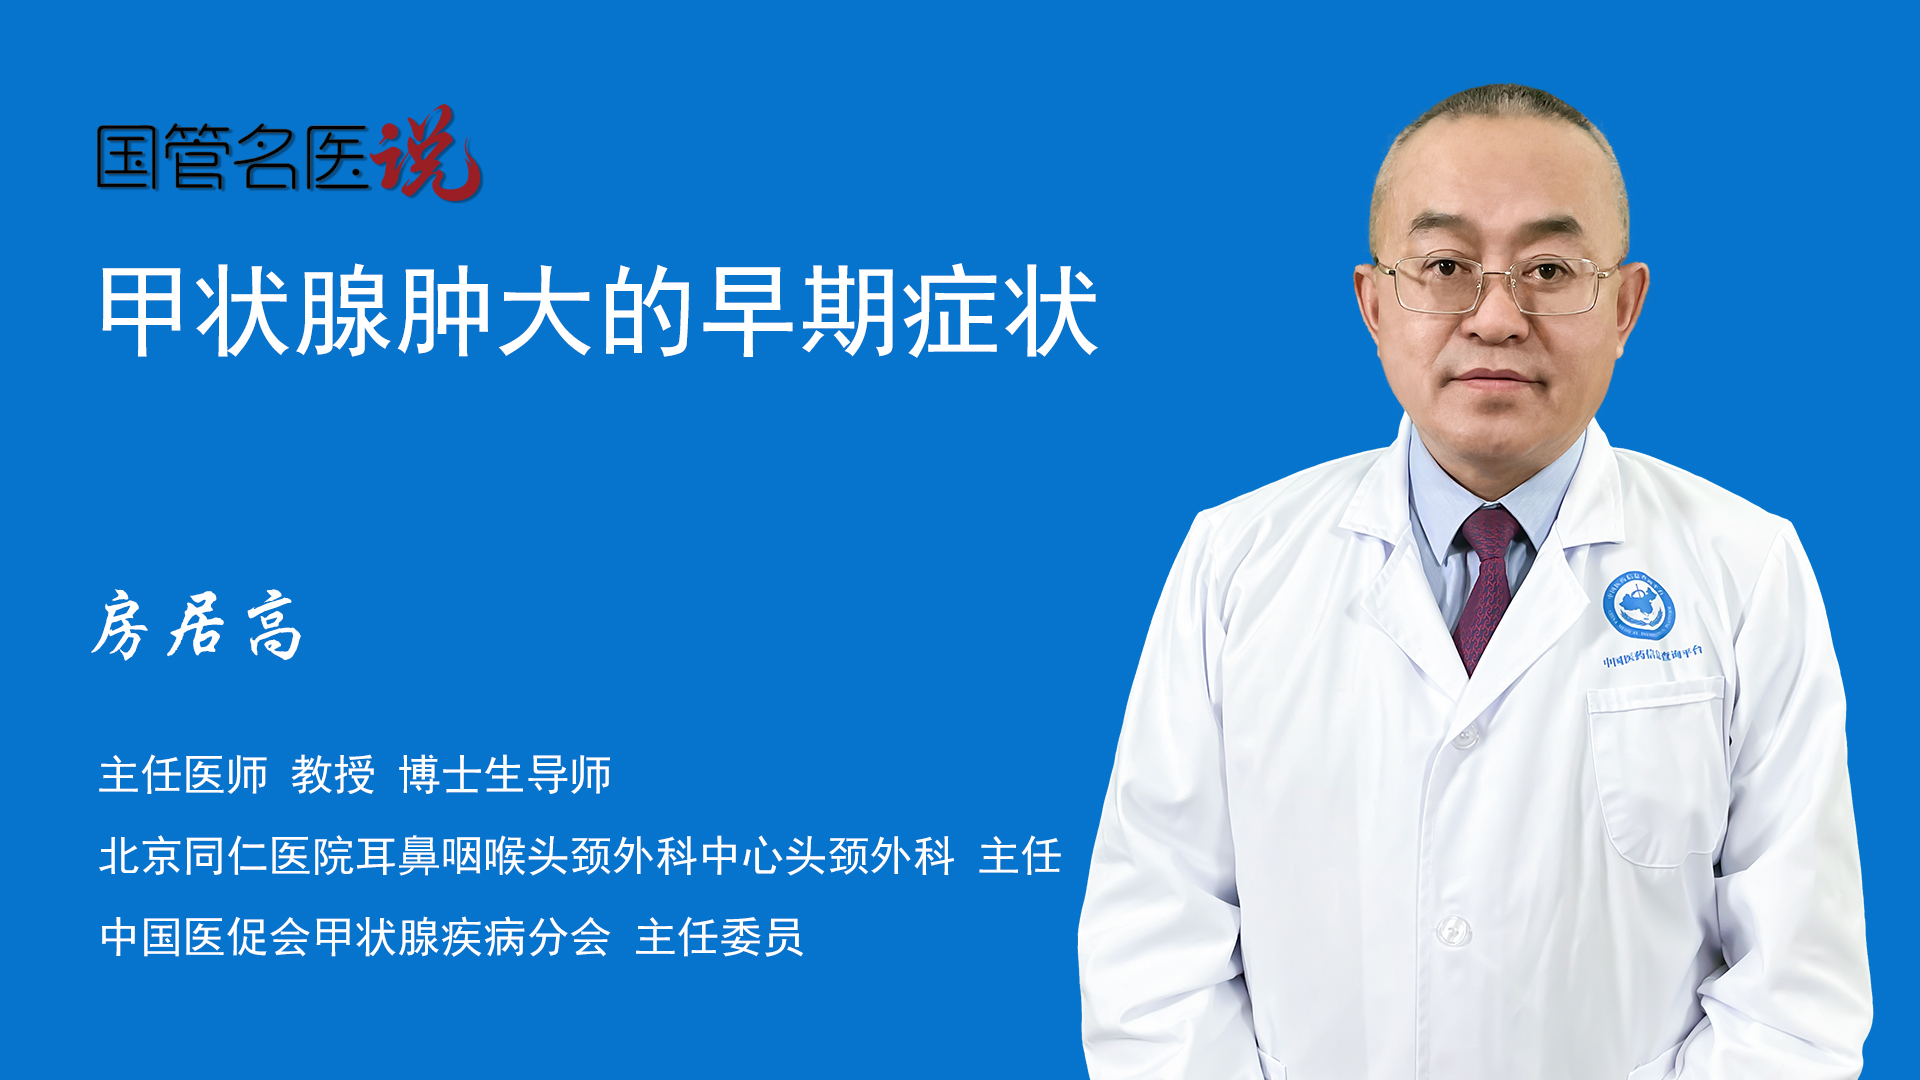 甲状腺, 甲状腺结节, 颈部肿胀, 甲状腺癌 | HK Surgeon